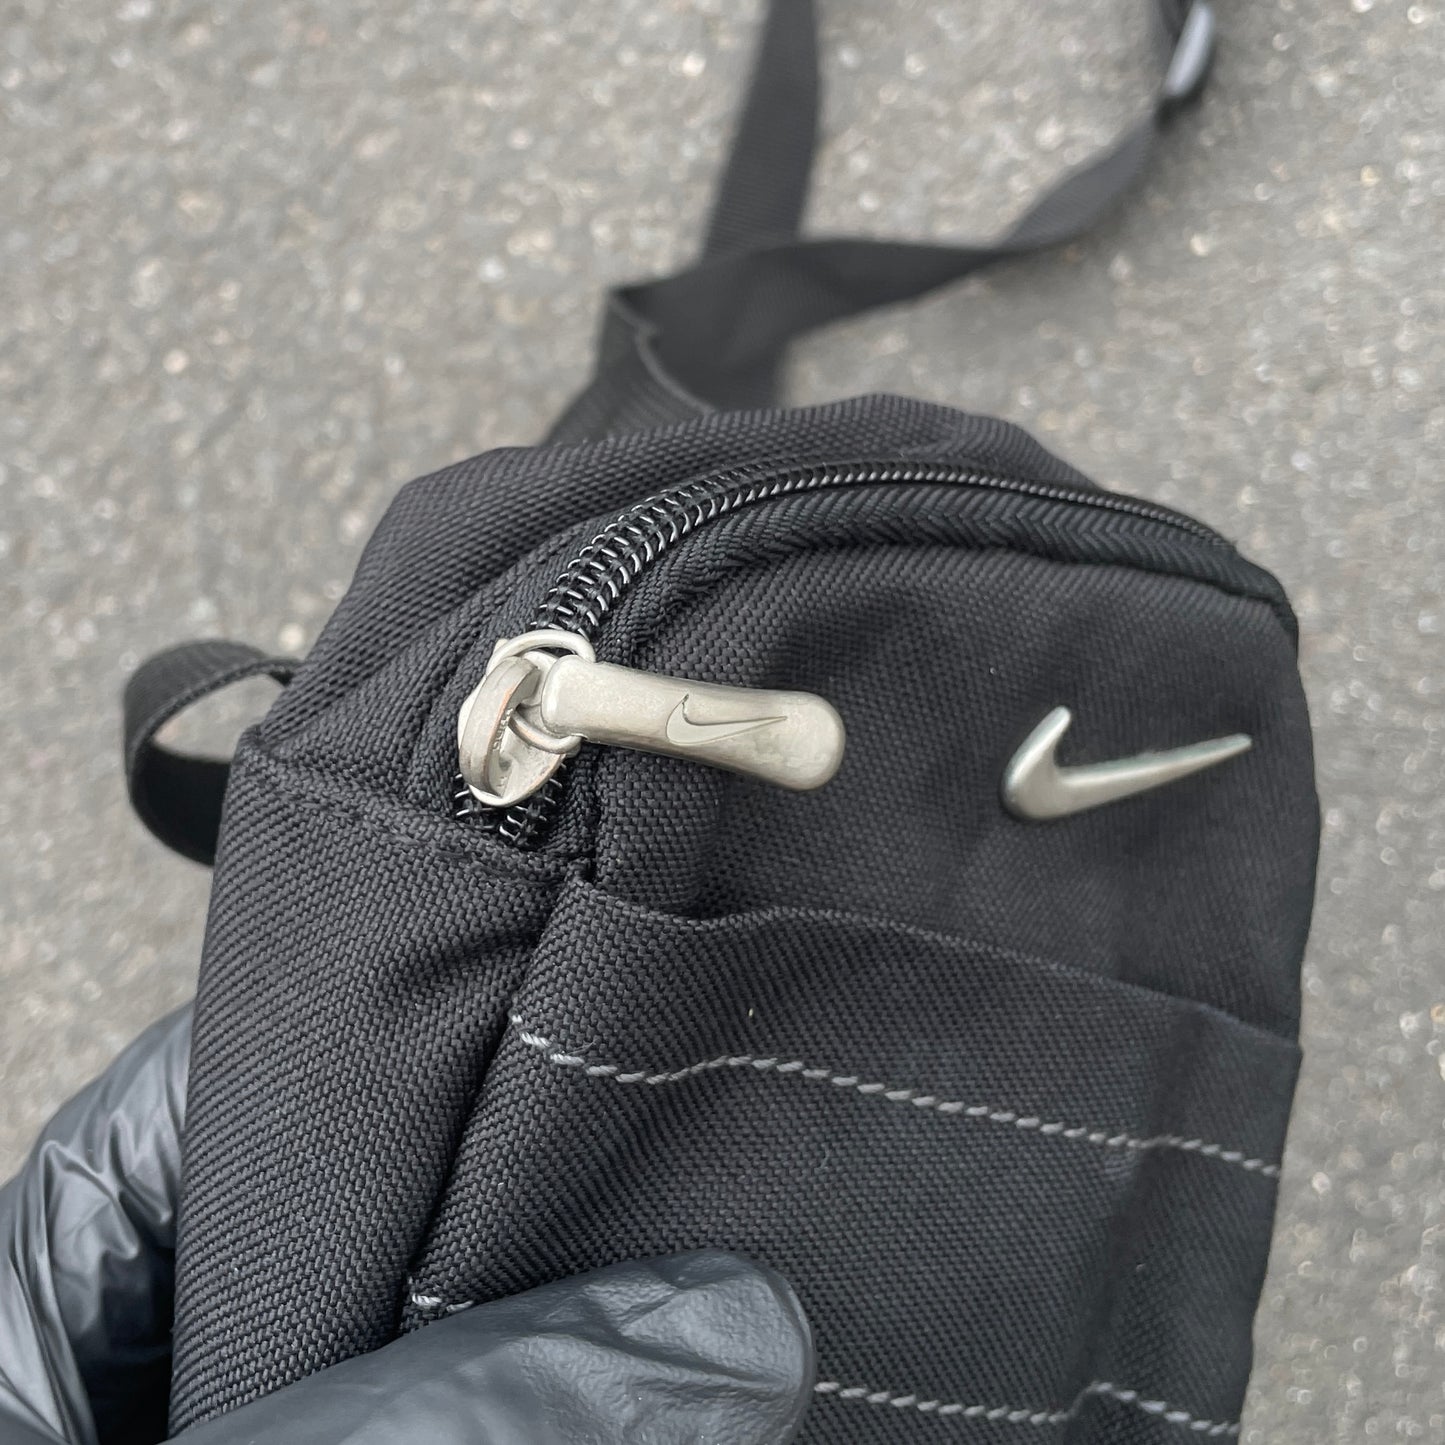 90's Nike Bag